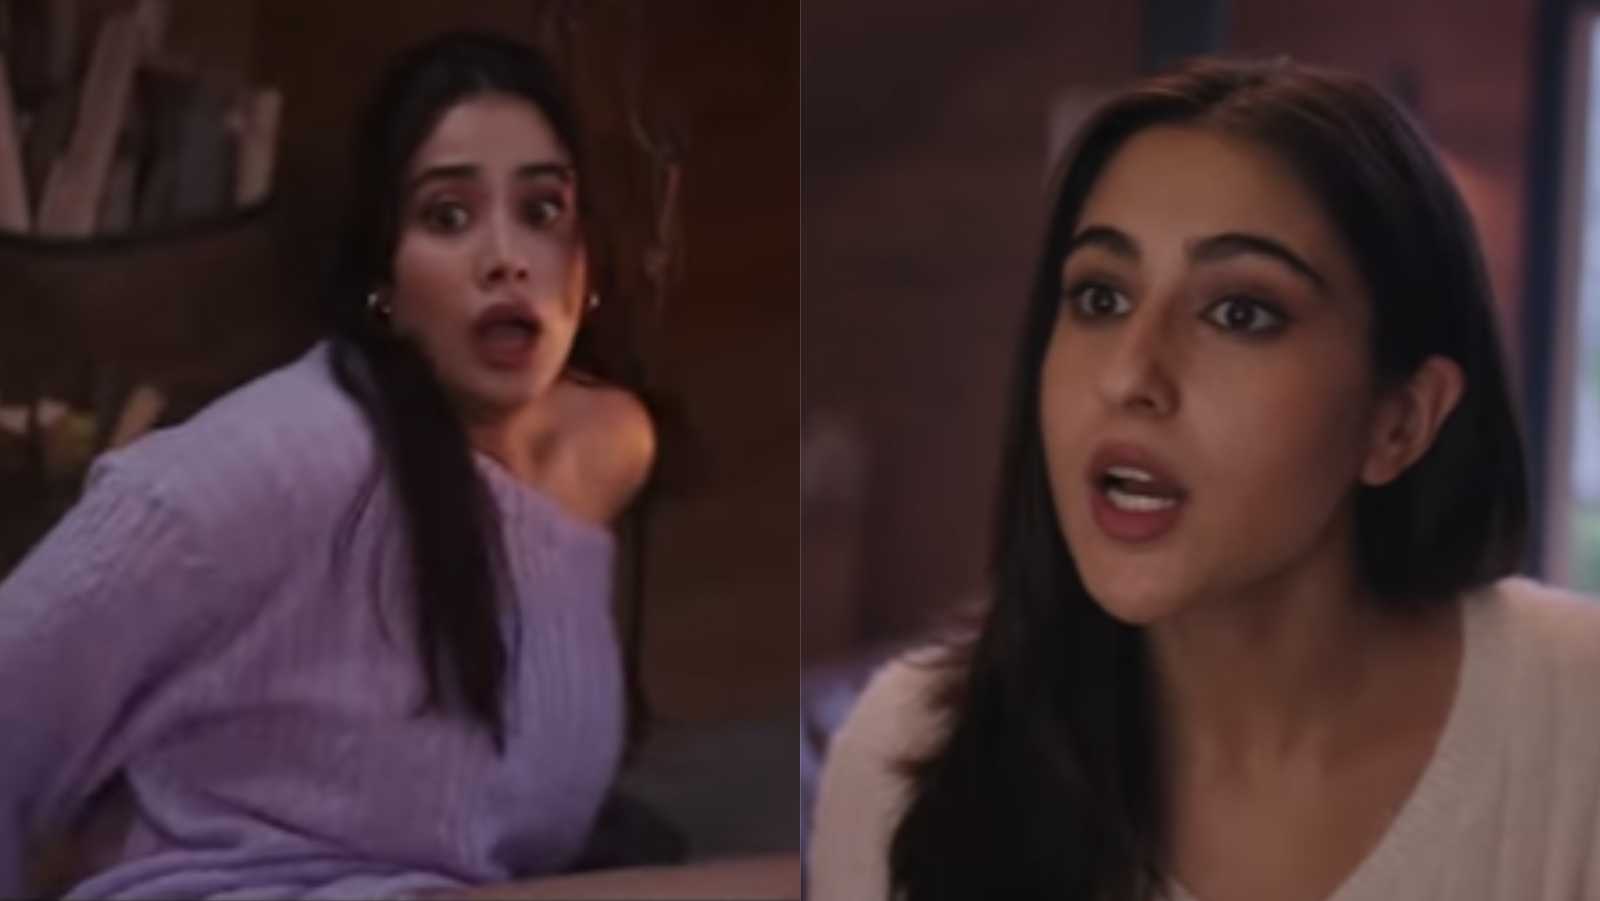 सारा अली खान की चीख सुनकर गिर पड़ीं जाह्नवी कपूर, फिर अपनी दोस्त की ऐसे लगाई क्लास (वीडियो)